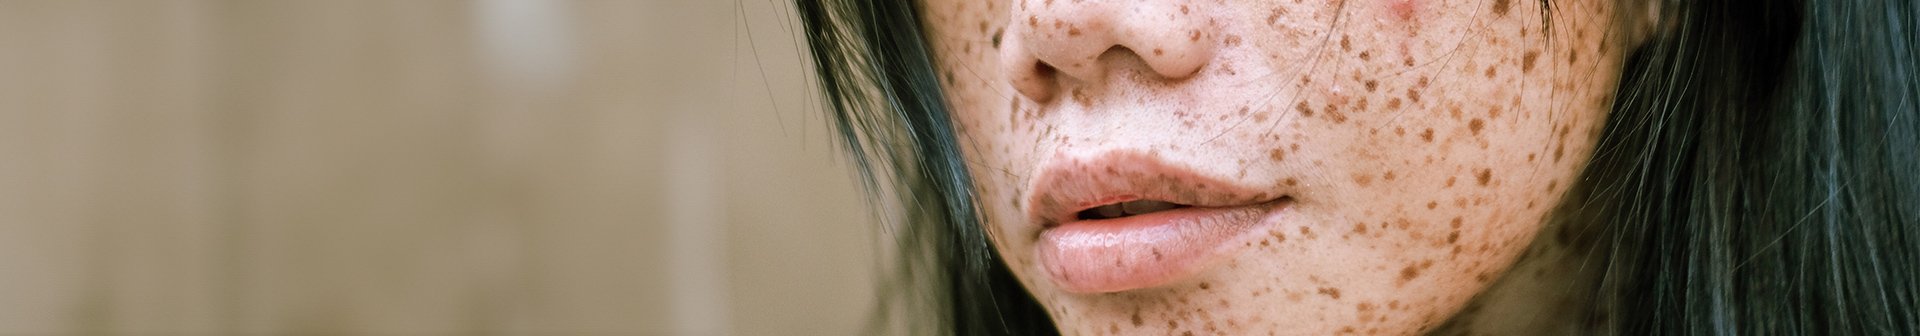 Ausschnitt eines Frauengesichts von der Nase bis zum Mund mit schwarzen Haaren und Pigmentflecken im Gesicht